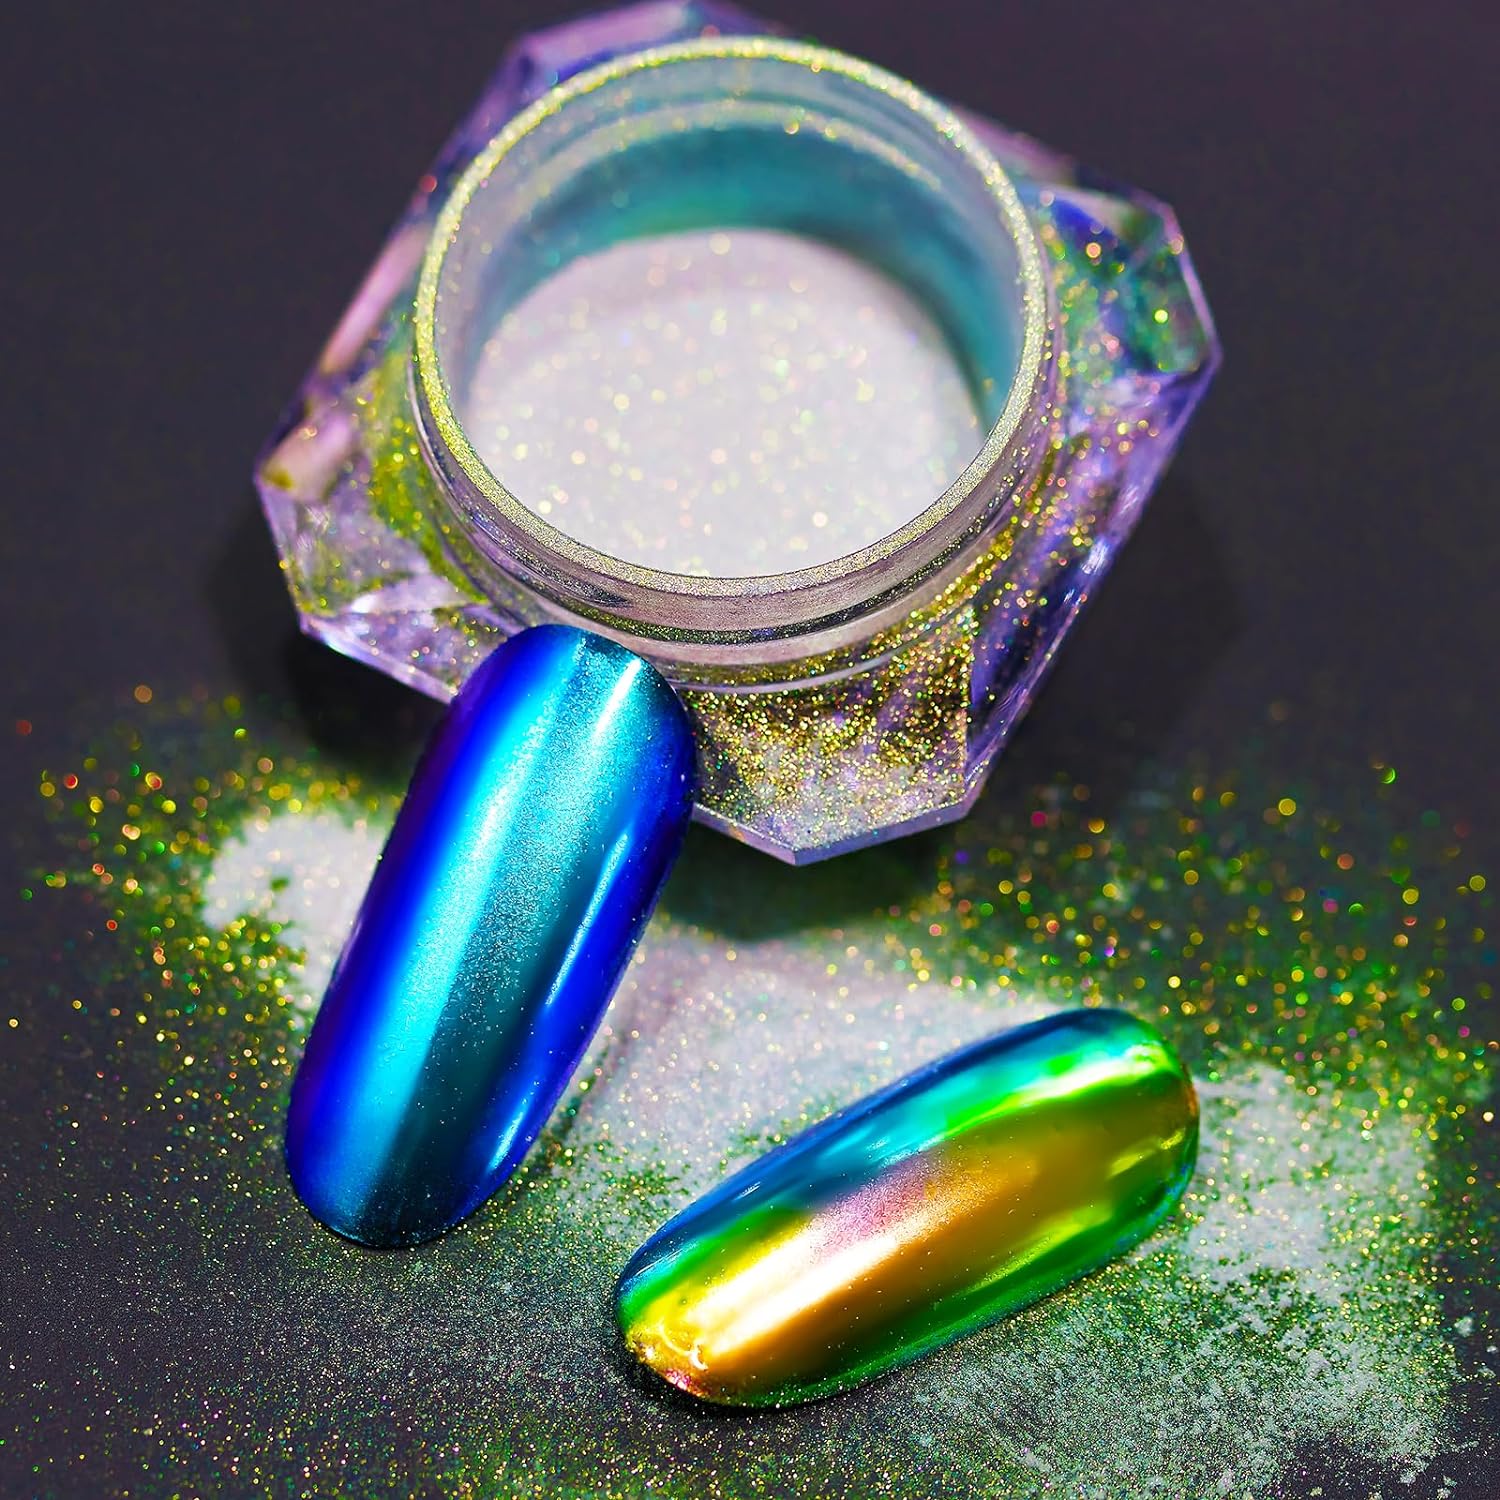 Chrome Nail Powder 2 colors,0.5g/jar